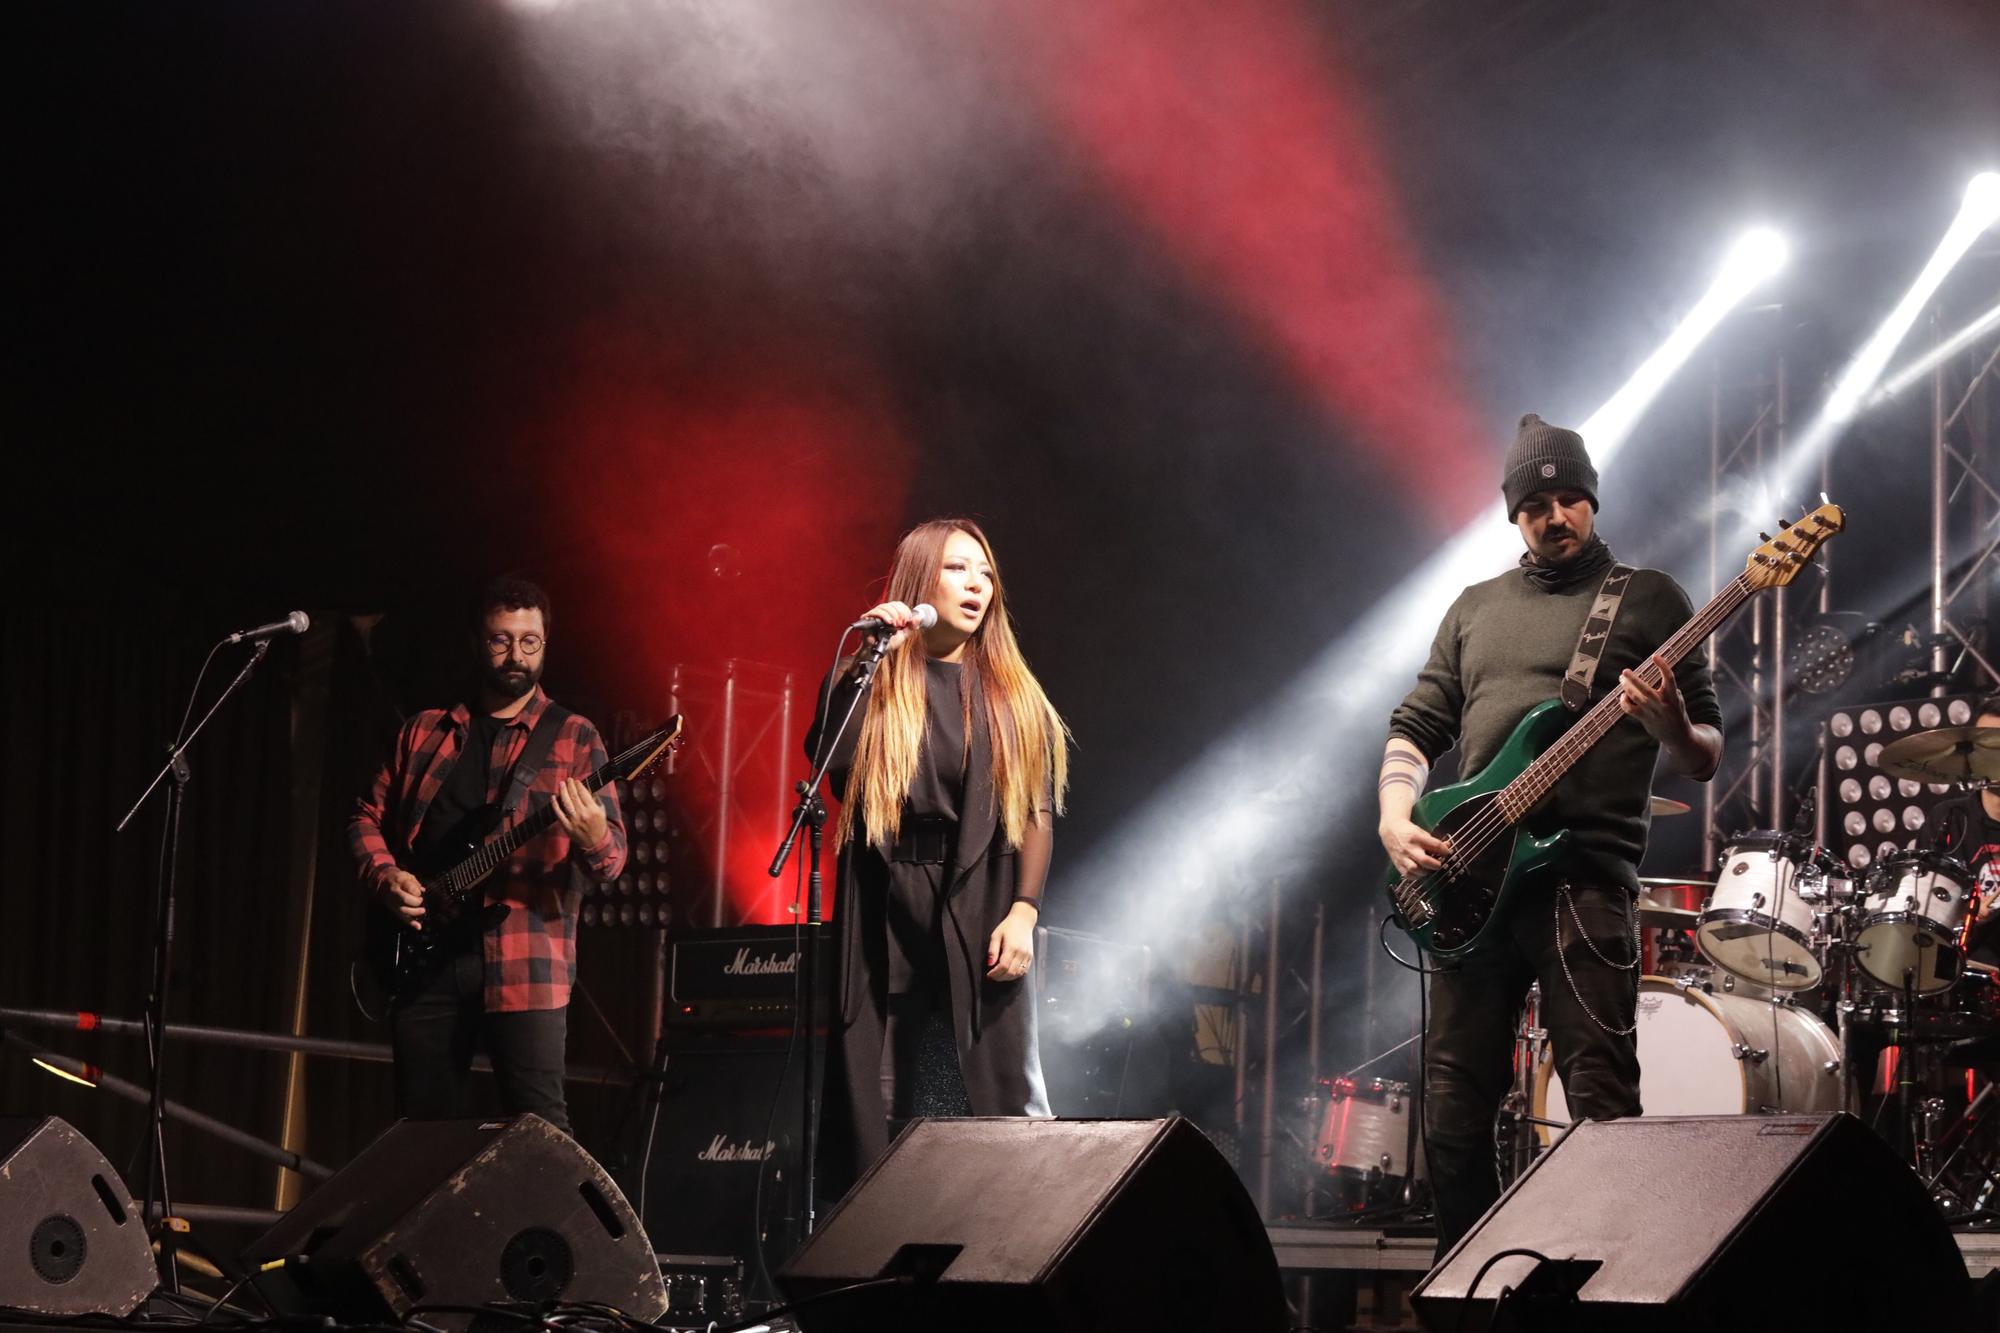 EN IMÁGENES: El Oviedo Rock ya resuena en el Campillín